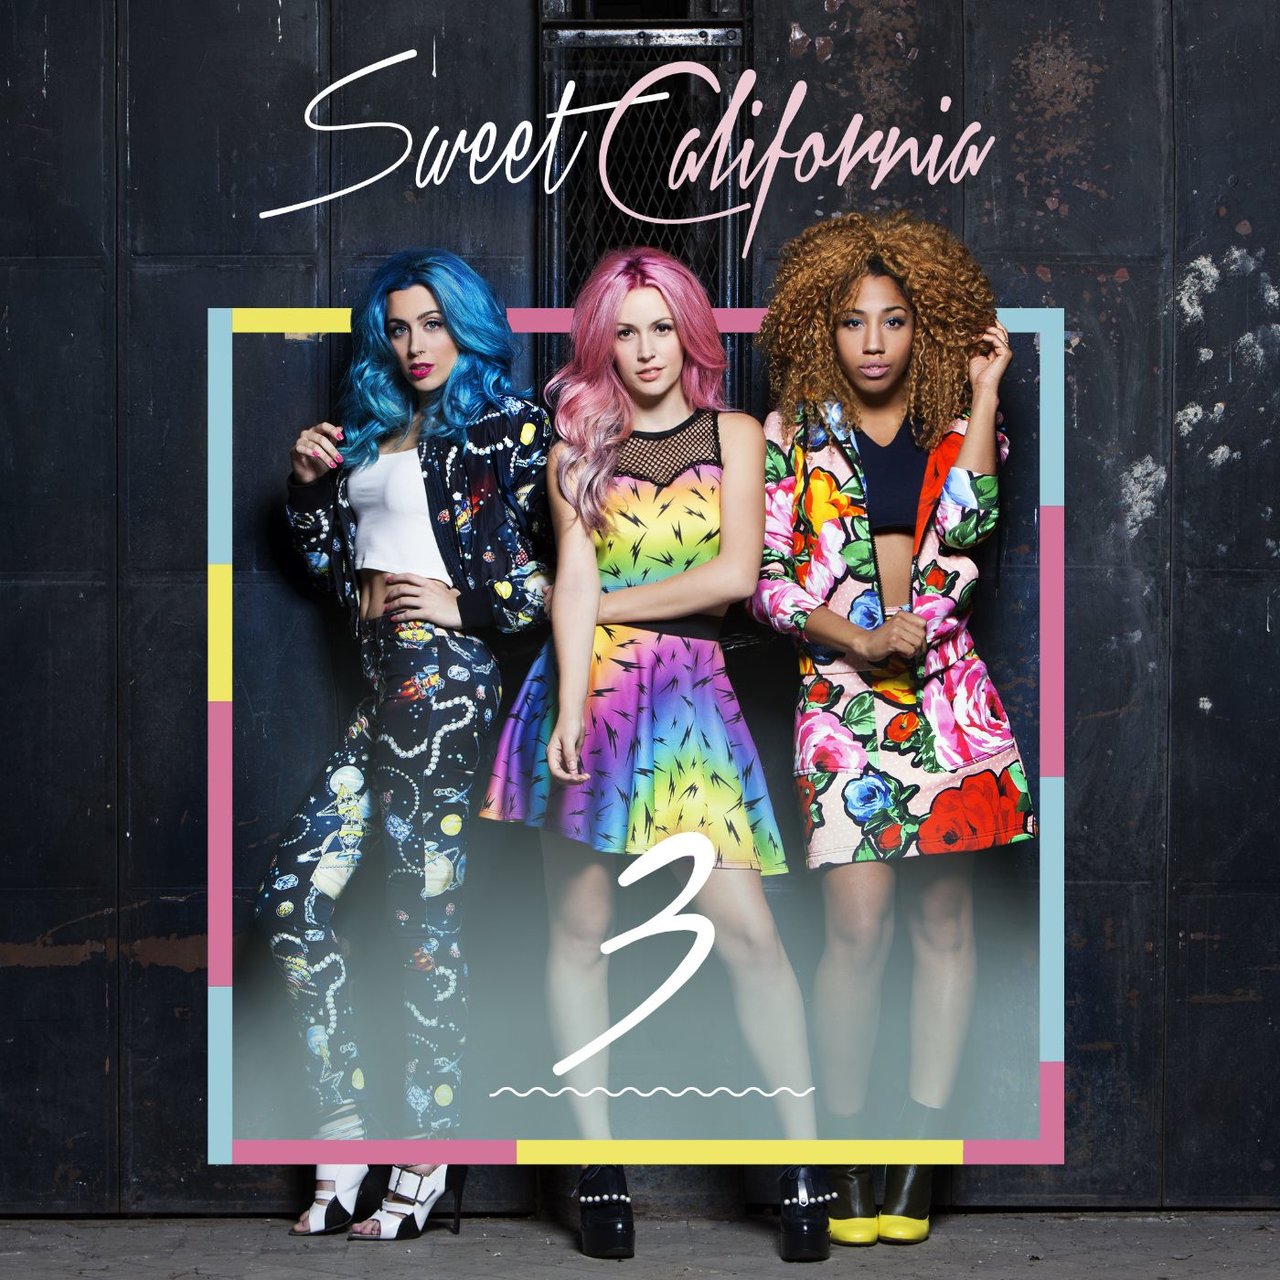 Sweet California 3 cover artwork